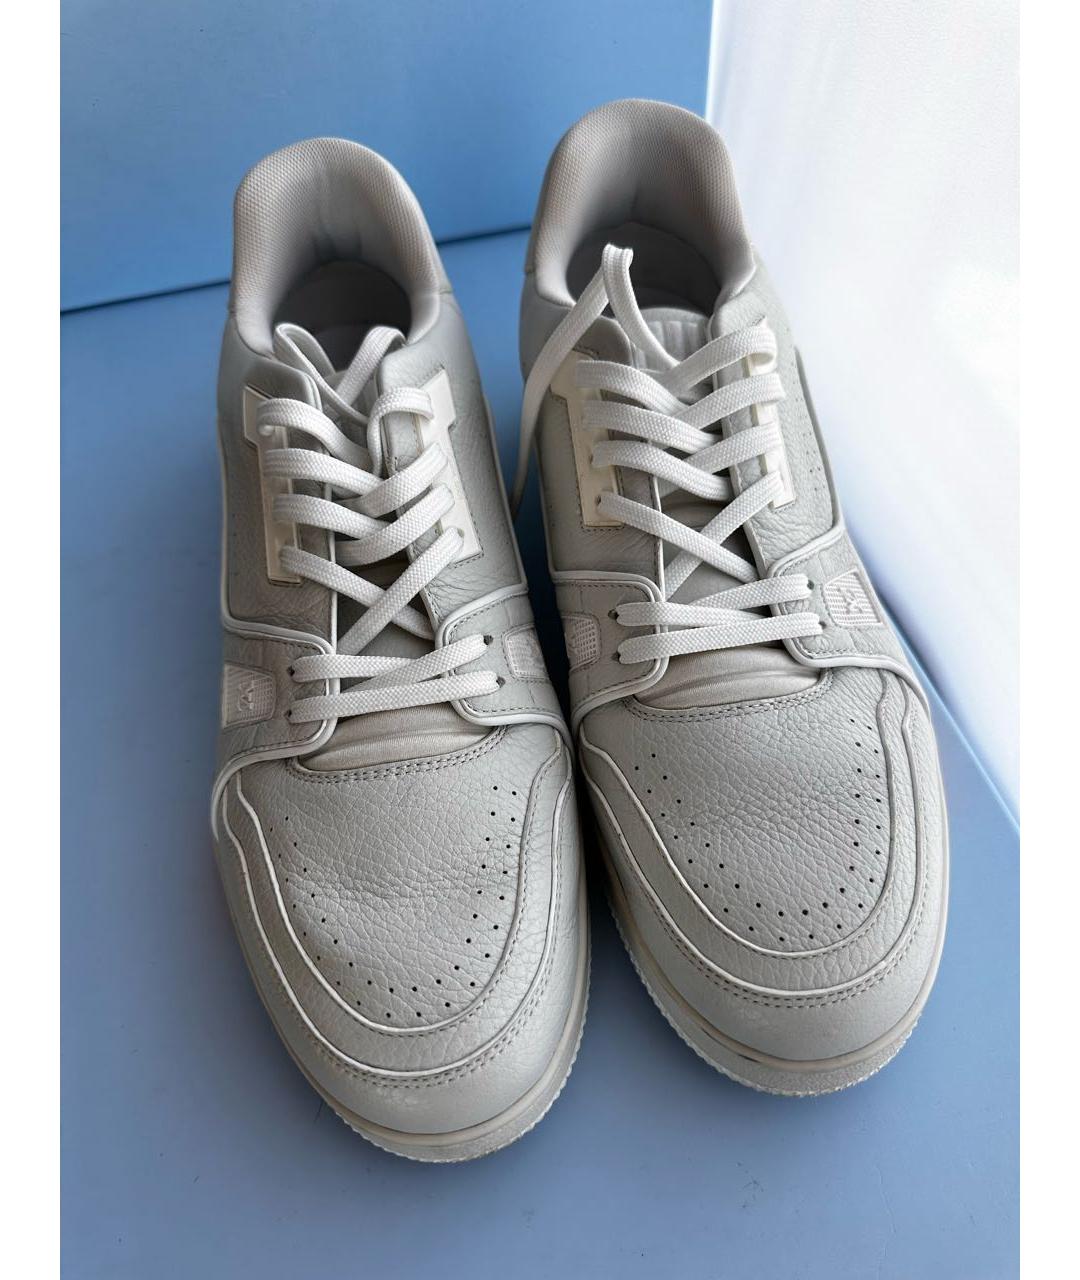 LOUIS VUITTON PRE-OWNED Белые кожаные низкие кроссовки / кеды, фото 2